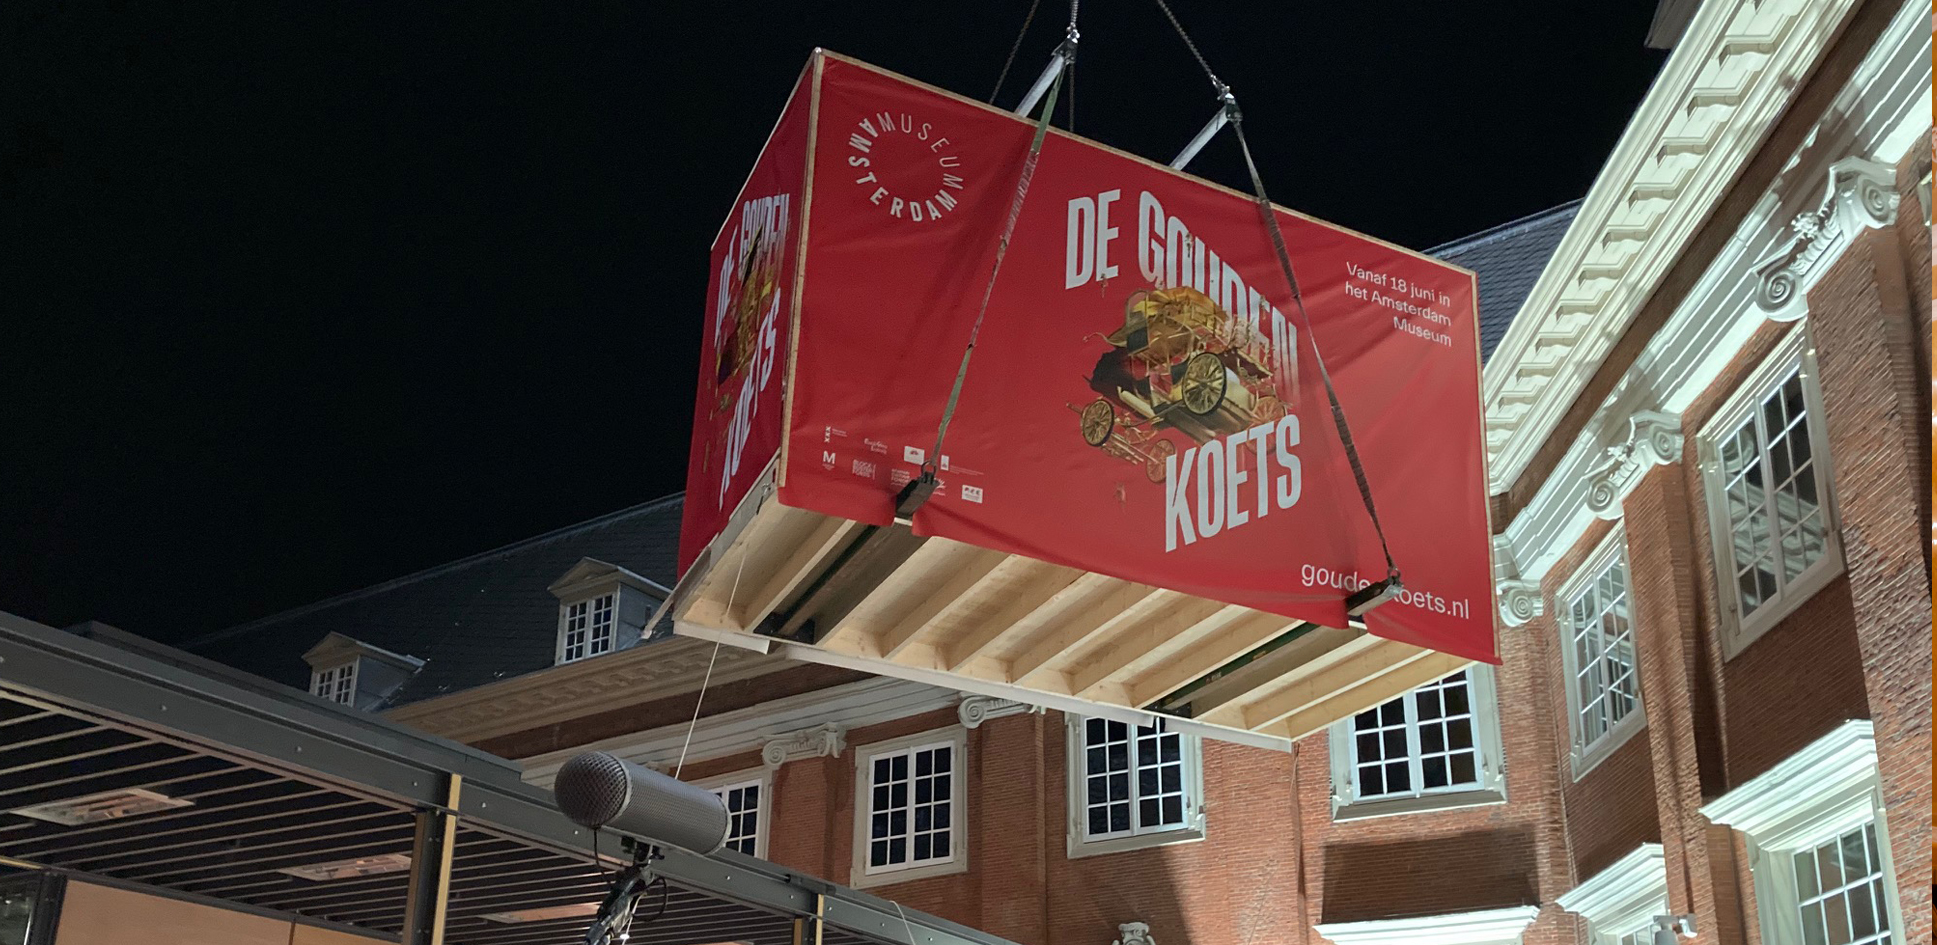 In de nacht van 9 op 10 juni takelt een hijskraan de Gouden Koets over het dak van het Amsterdam Museum.